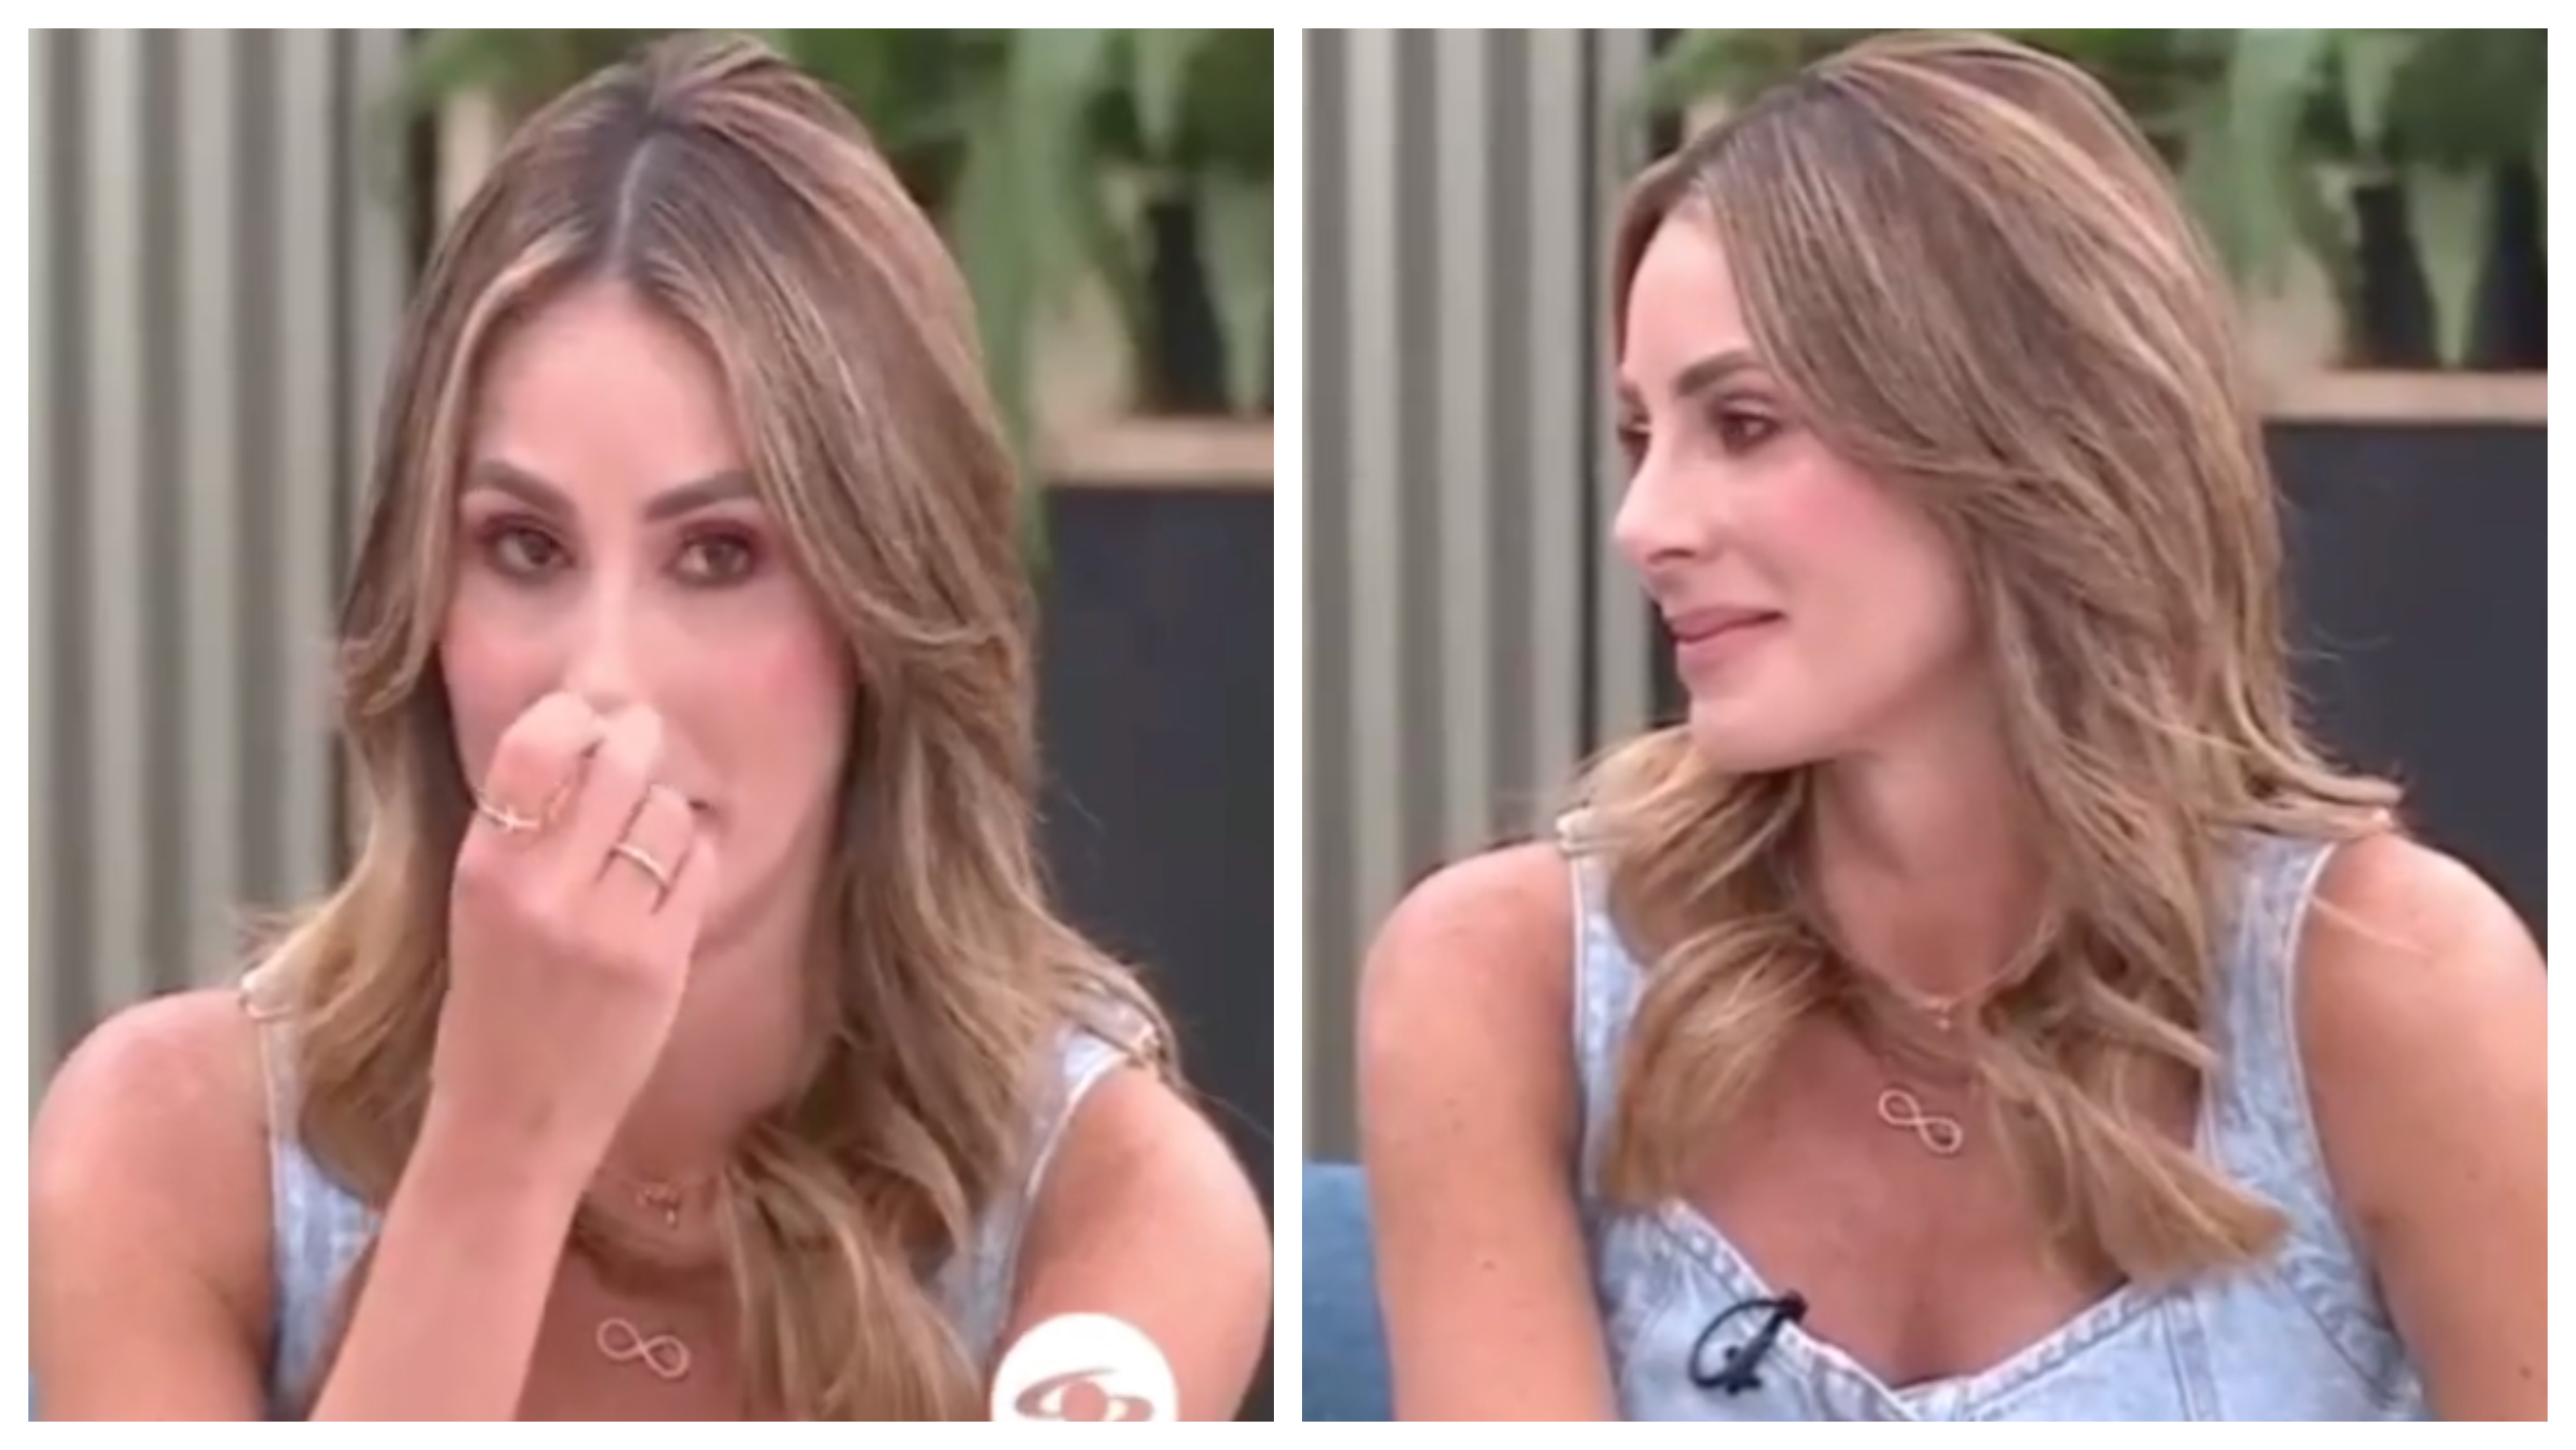 La presentadora lloró en el programa al rememorar a su hermana
FOTO: Capturas de pantalla (CaracolTV)